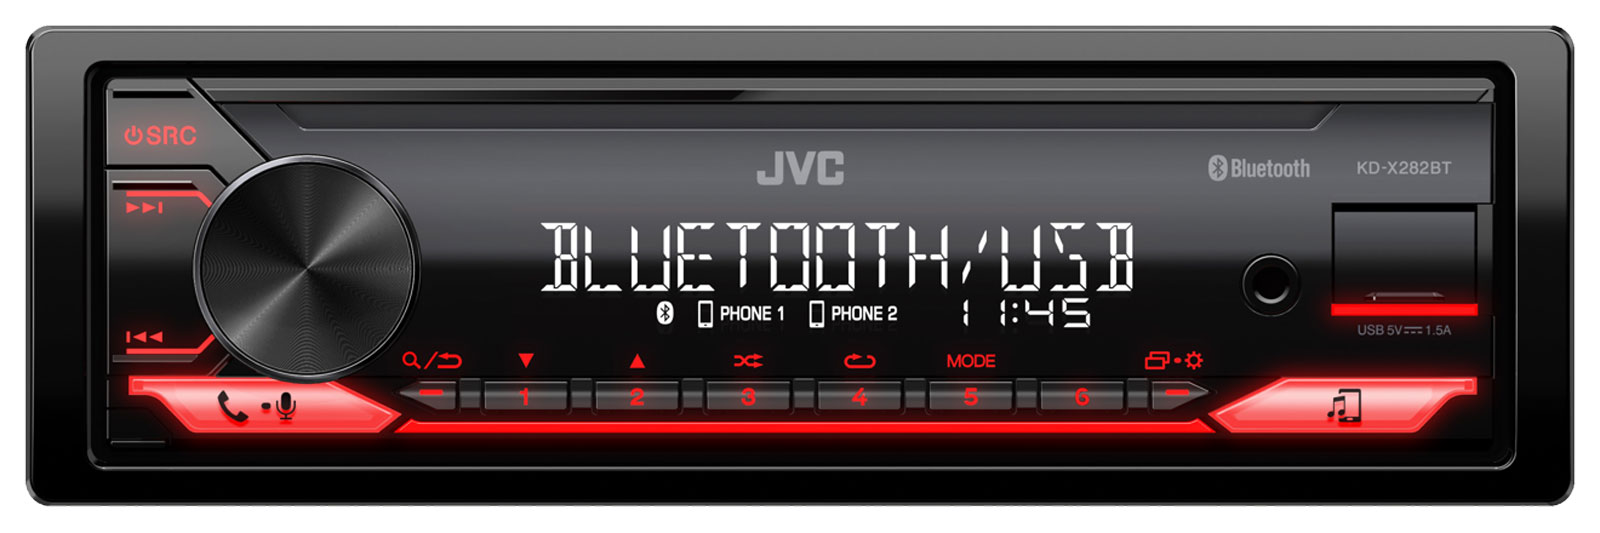 JVC KD-X282BT - MP3-Autoradio mit Bluetooth / USB / AUX-IN